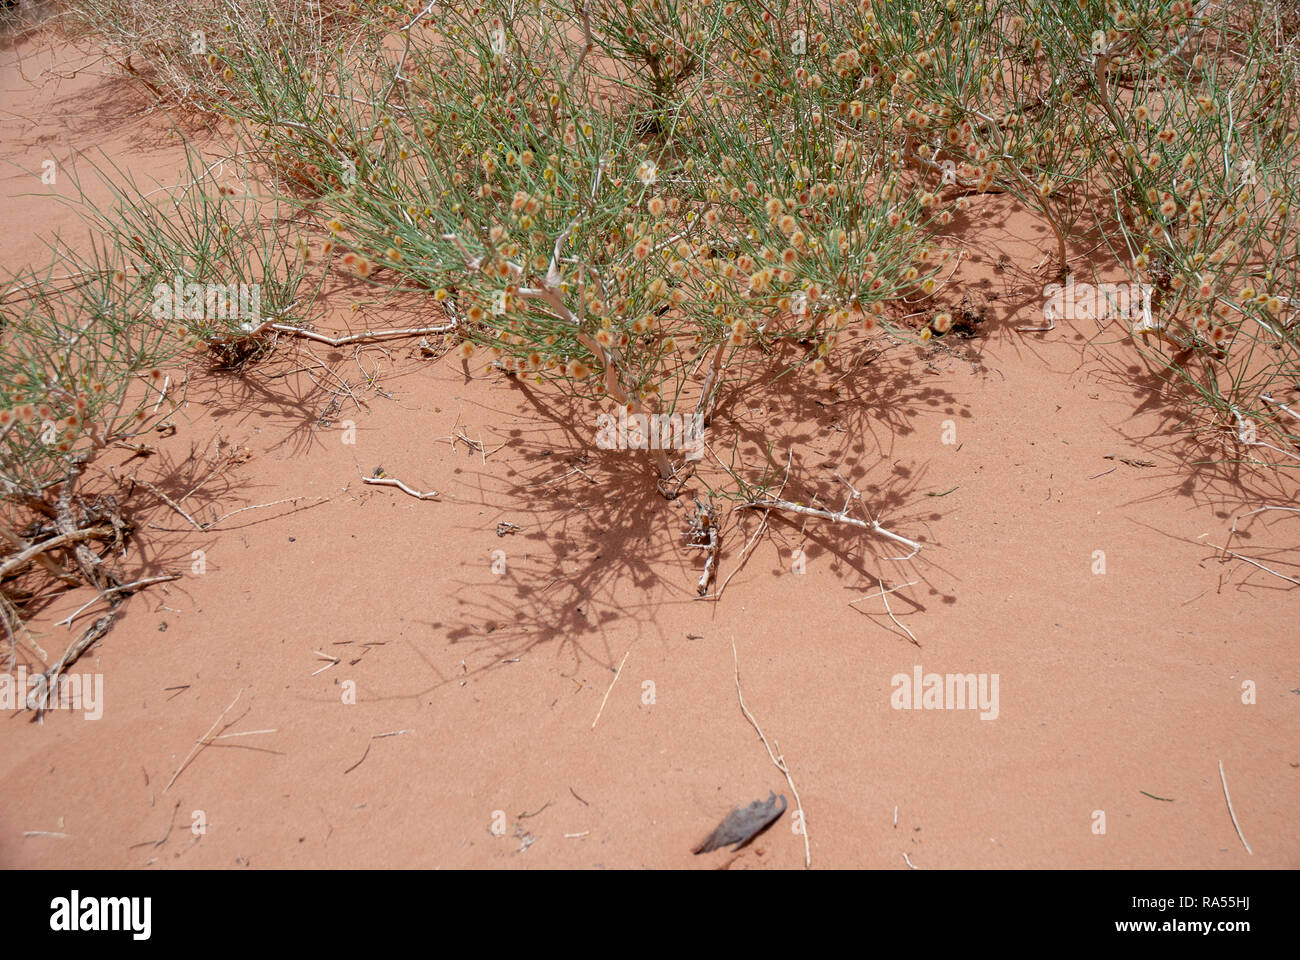 El crecimiento de las penurias - hojas verdes crecen fuera del desierto de arena roja fotografiado en Wadi Rum, Jordania Foto de stock